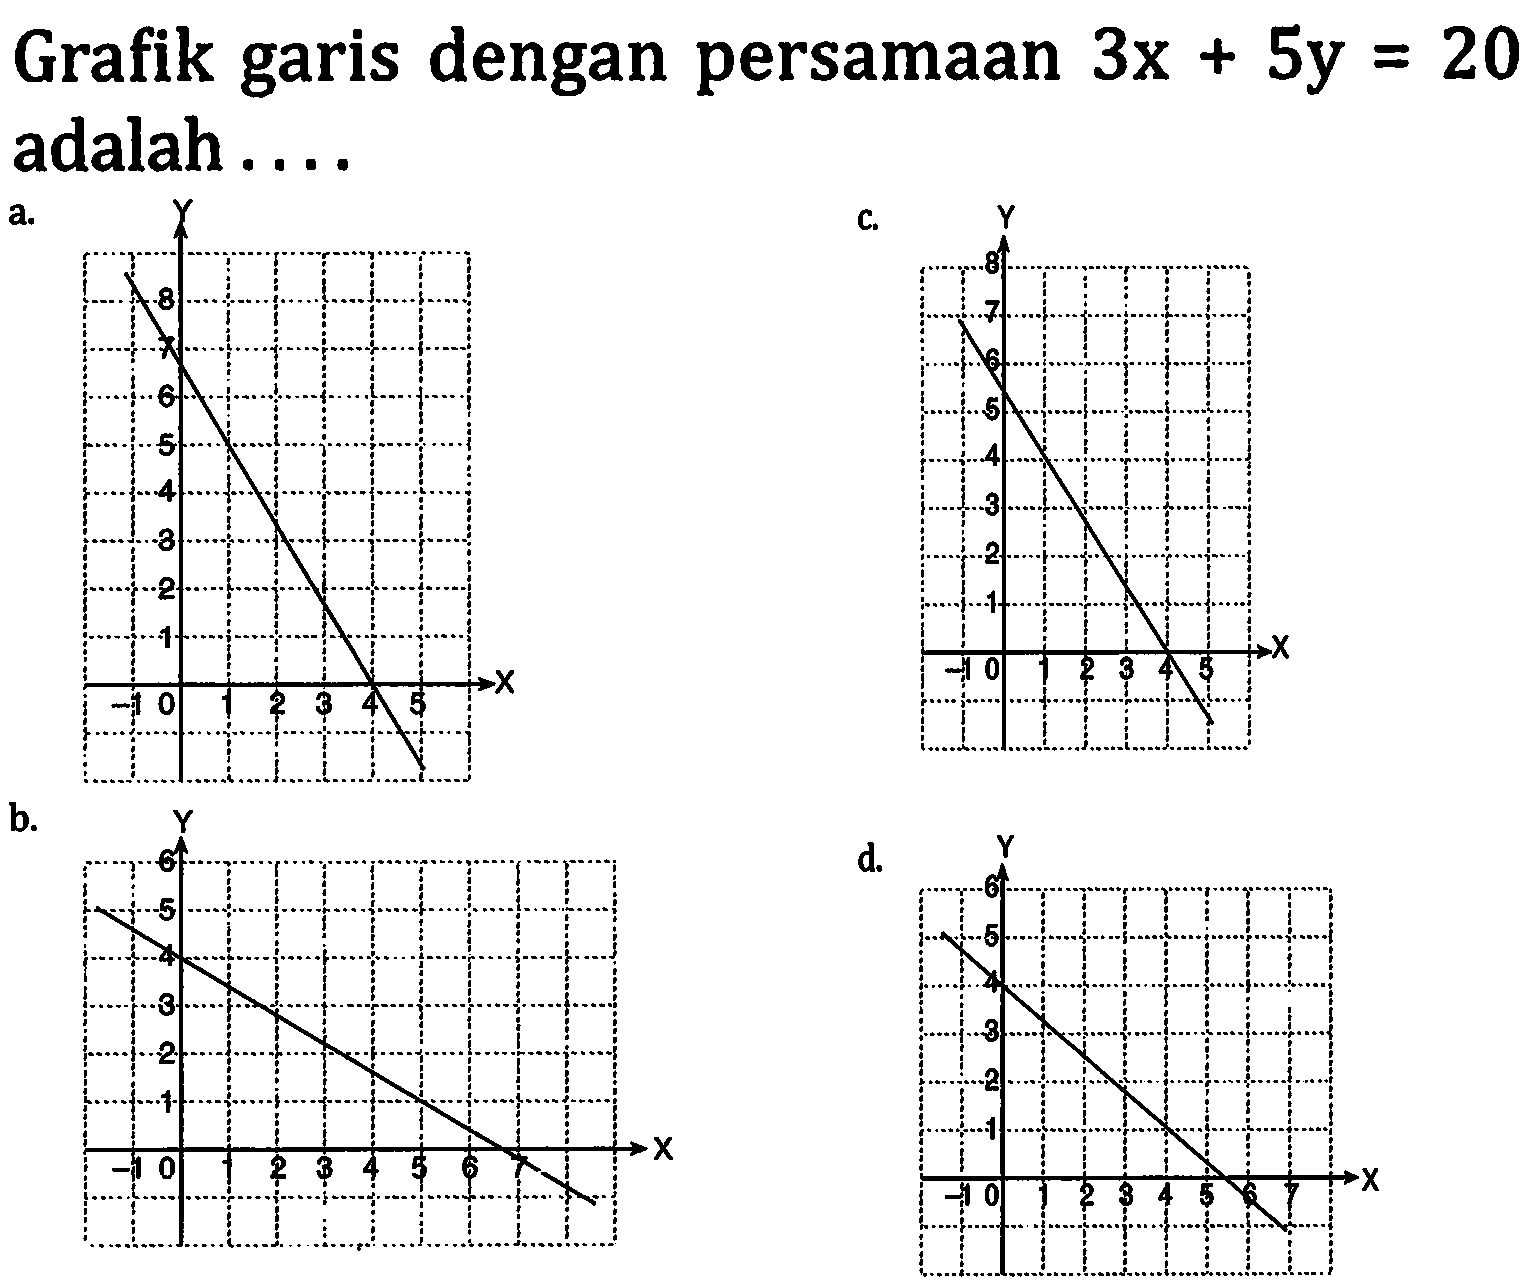 Grafix garis dengan persamaan  3x+5y=20  adalan... a. 7 4 b. 4 5 c. 6 4  d. 4 6